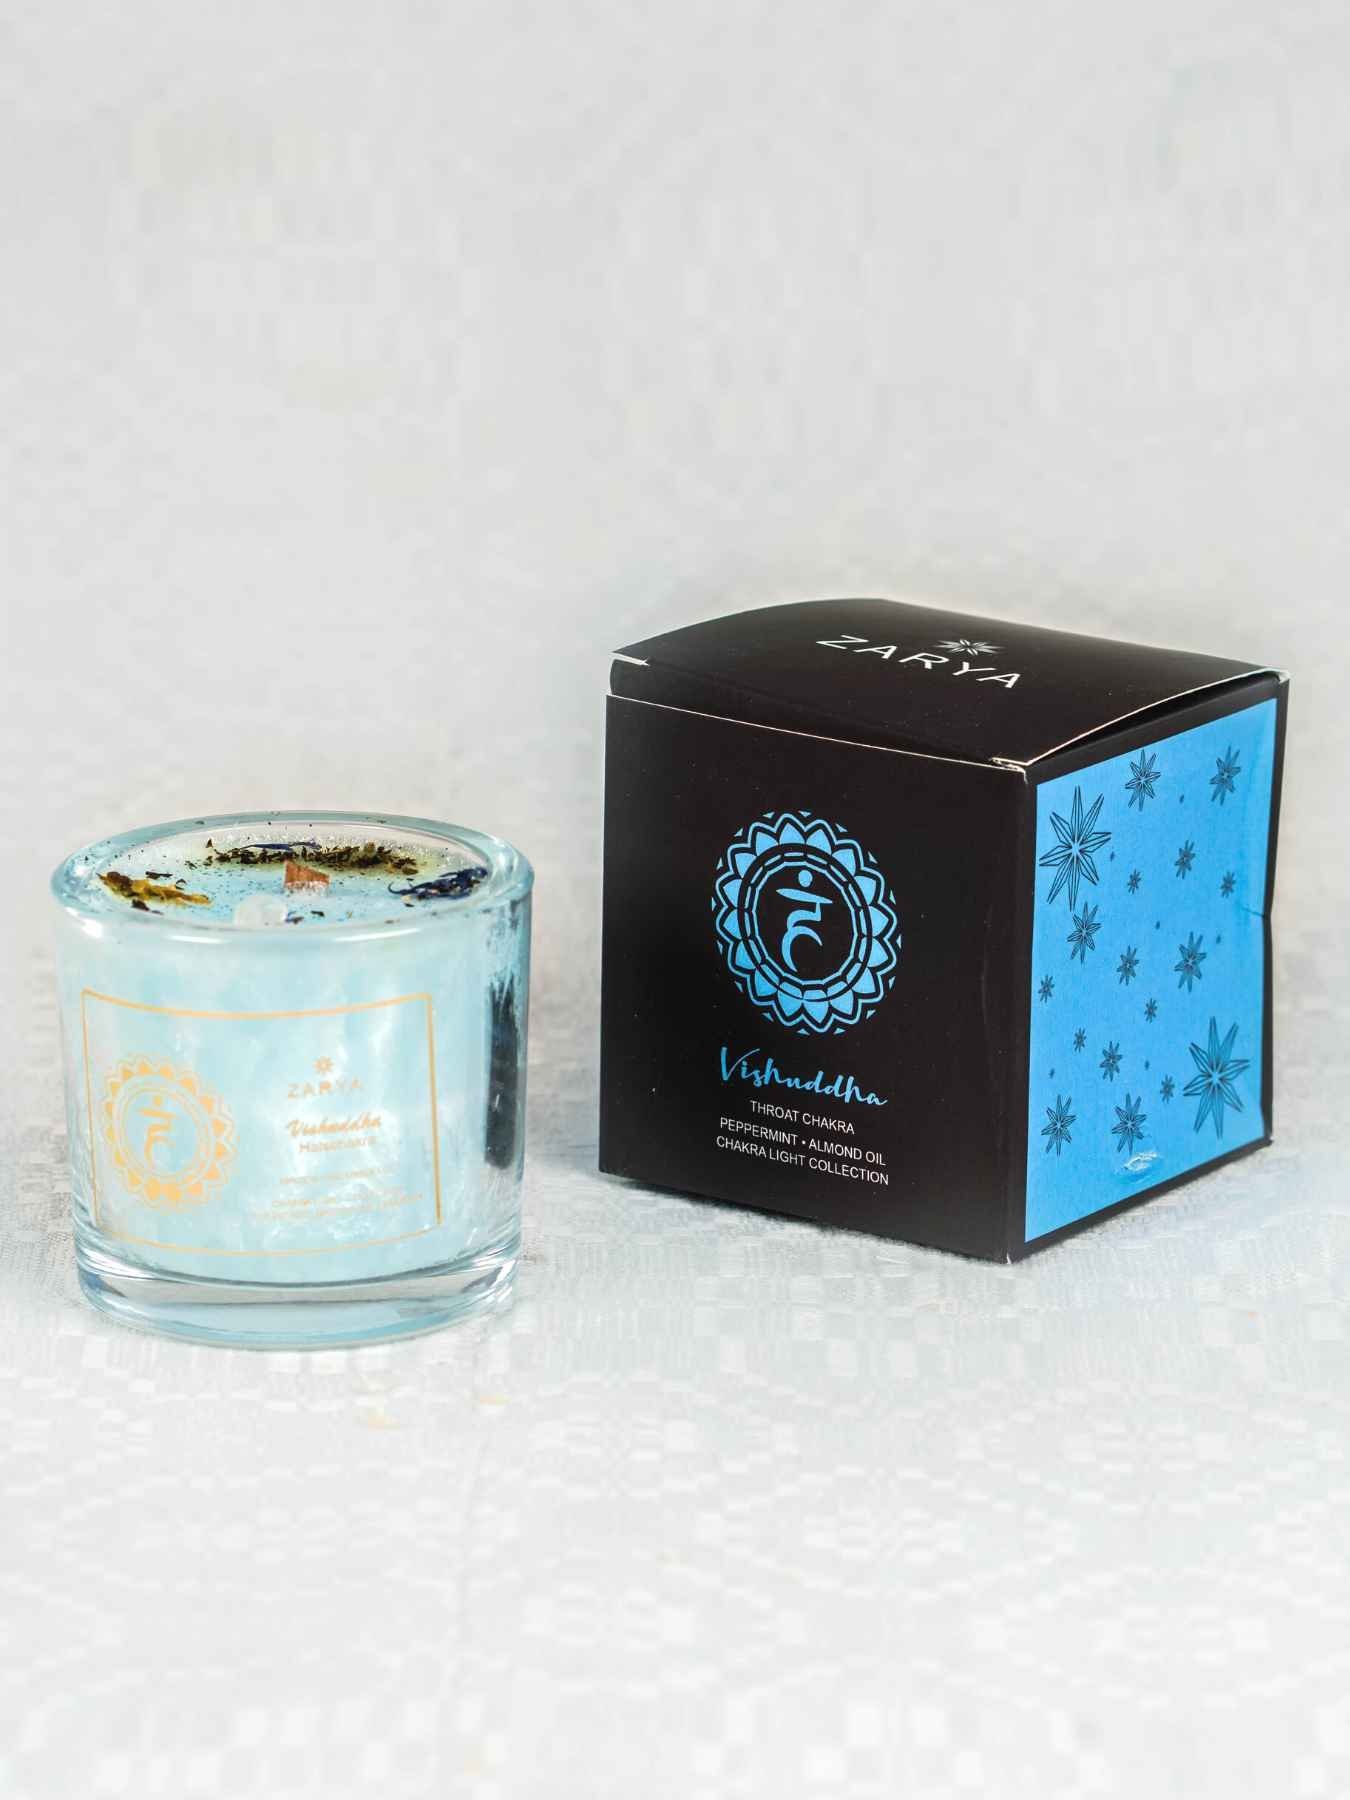 chakrana Duftkerze mit Hellblau Geschenkverpackung Glasbehälter aus Bio-Stearin, Chakra–Duftkerze edler